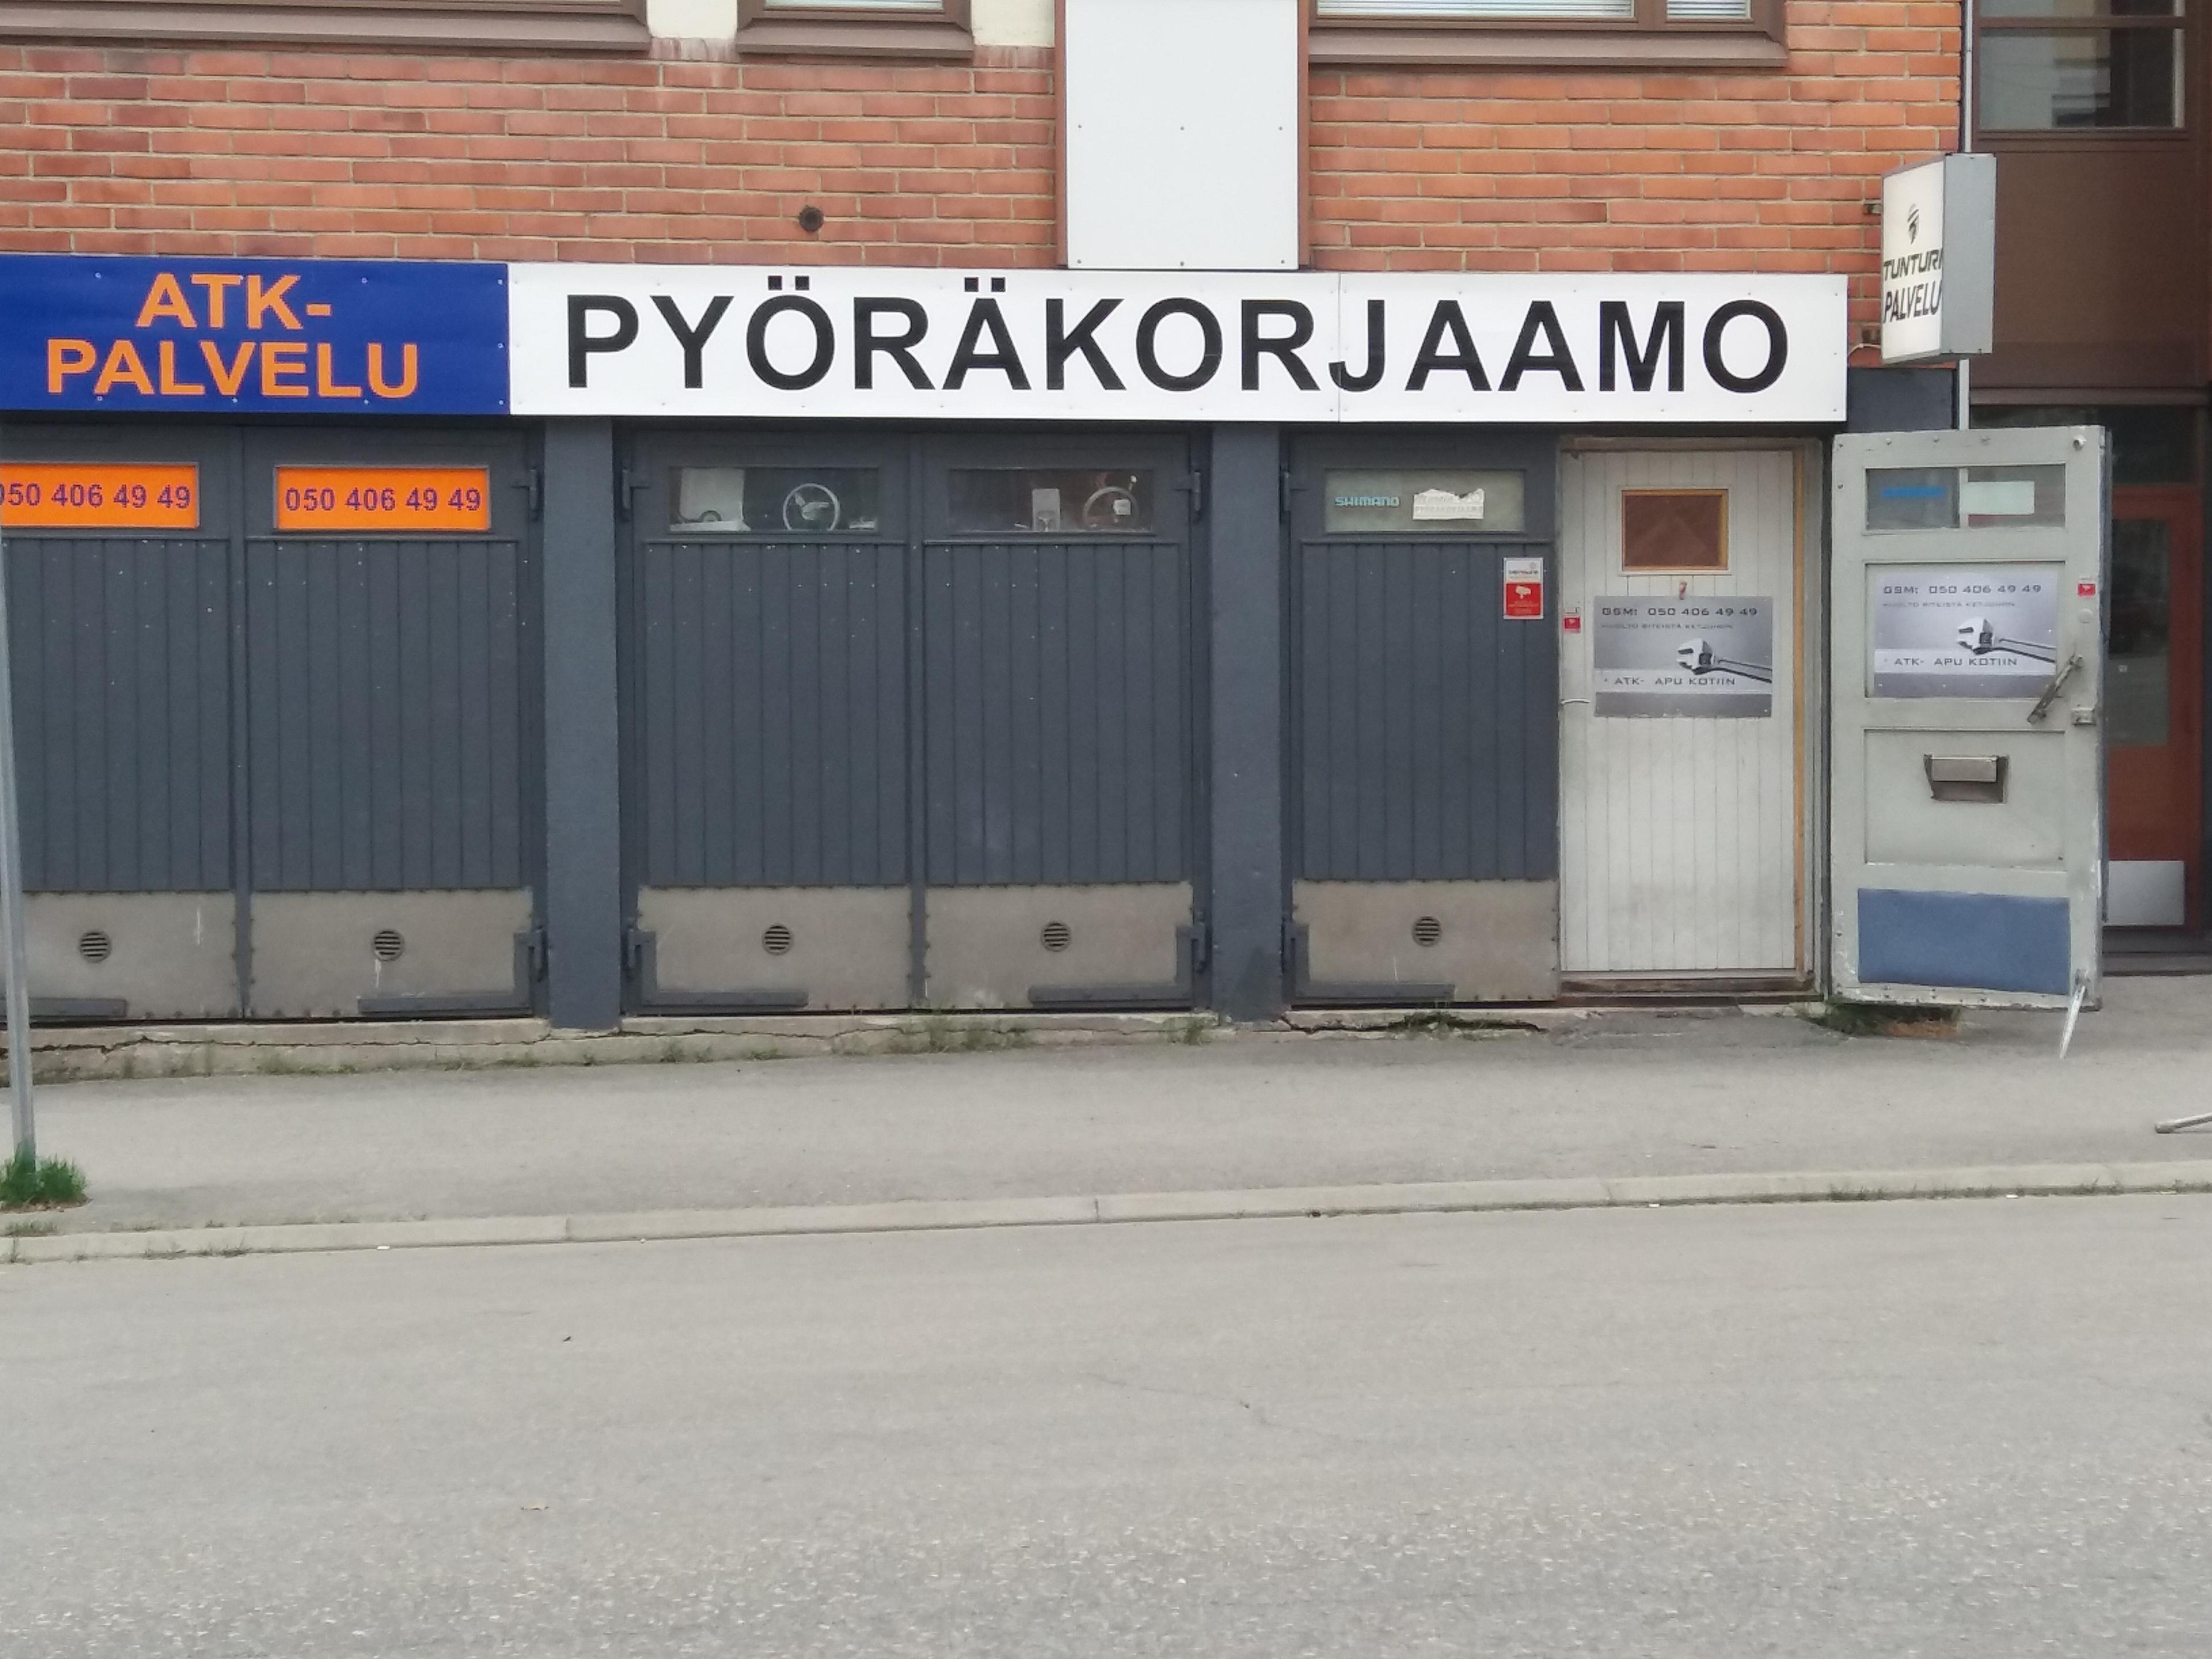 Cover image of this place Martin Pyöräkorjaamo